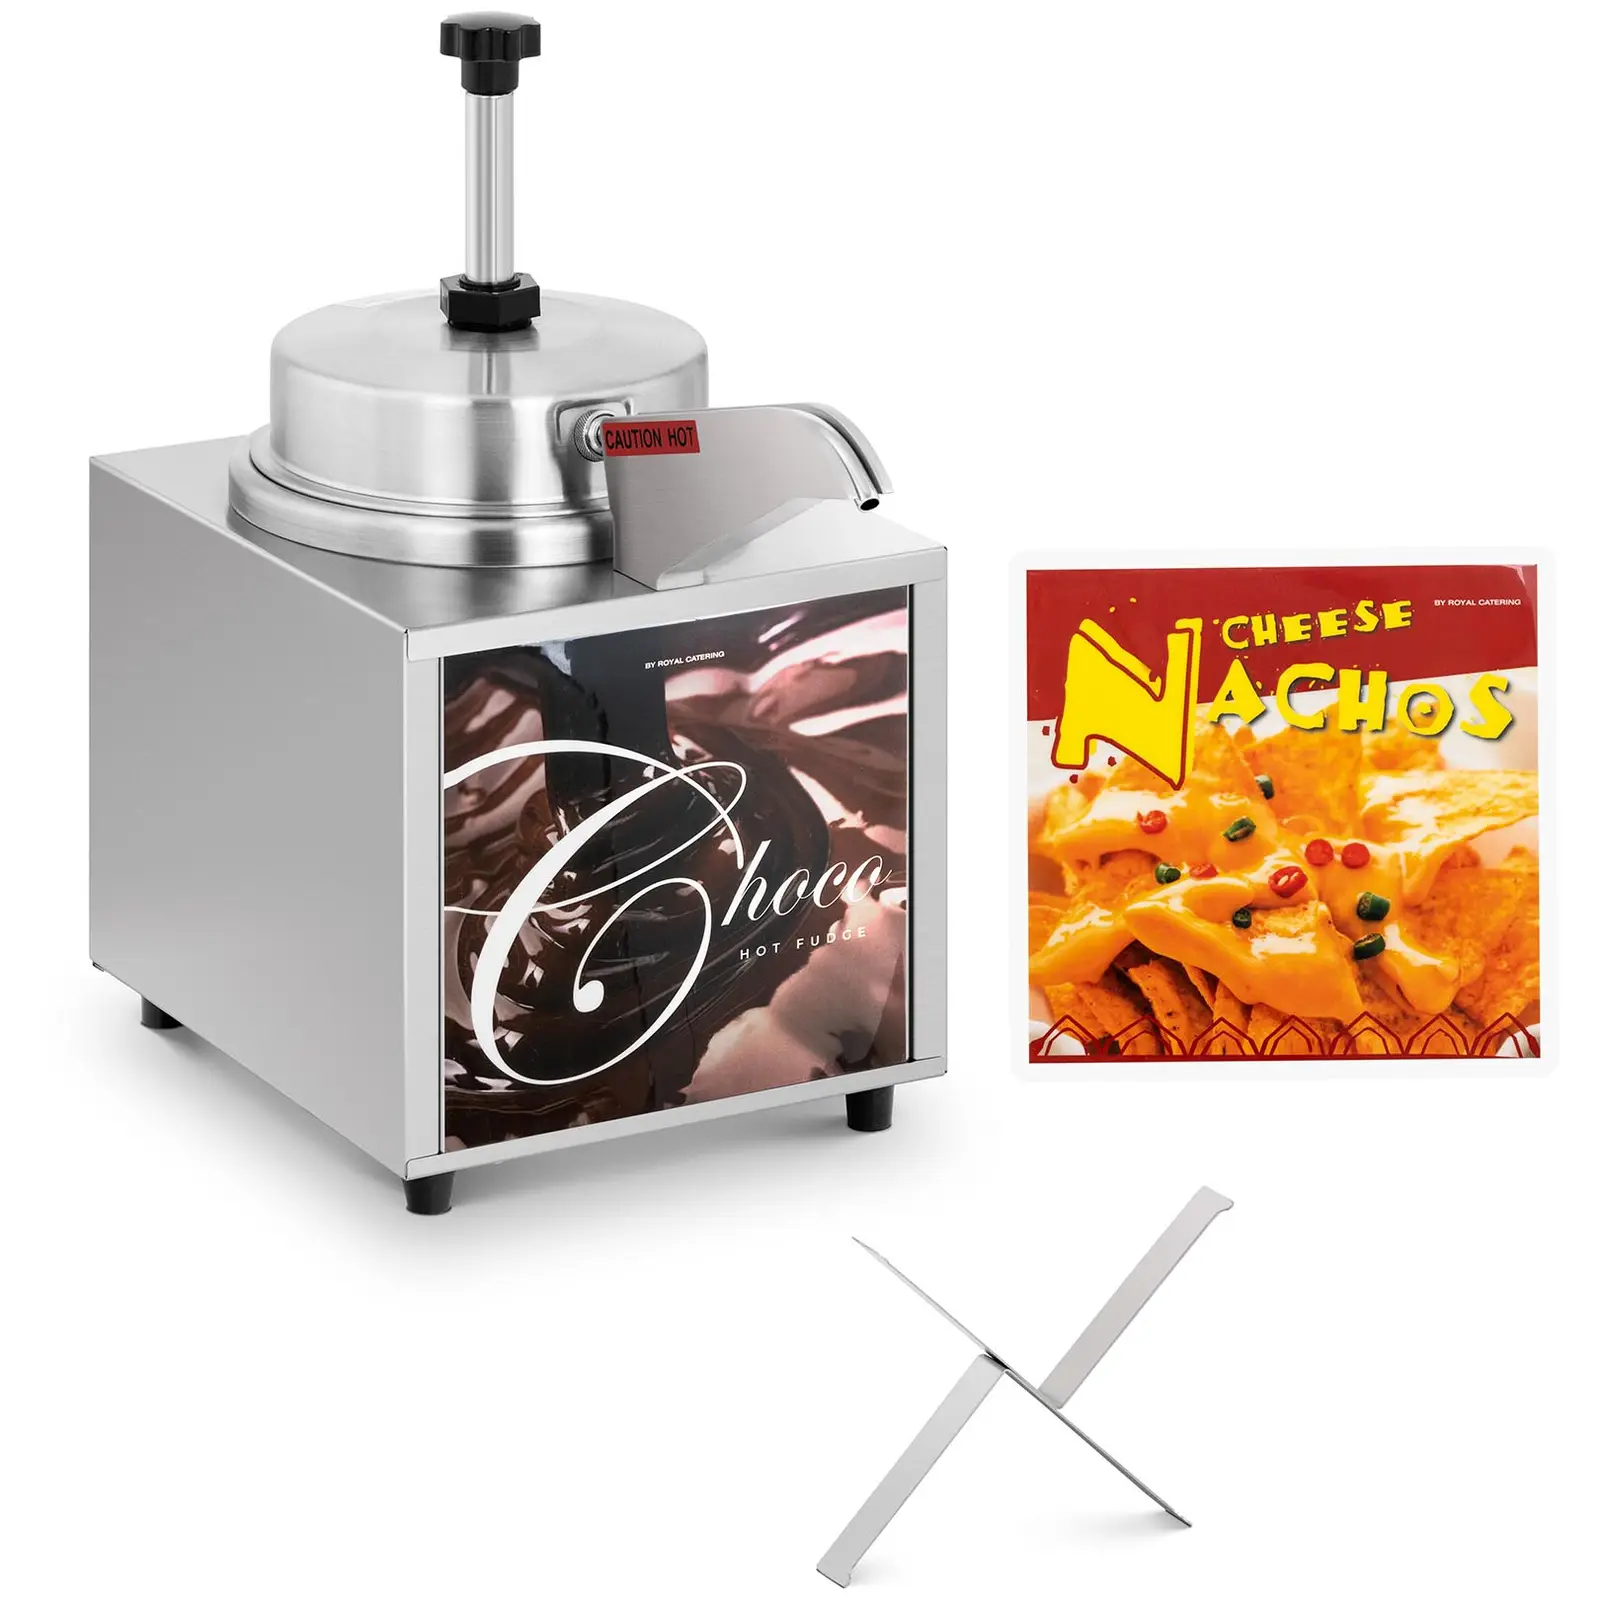 Machine a nachos